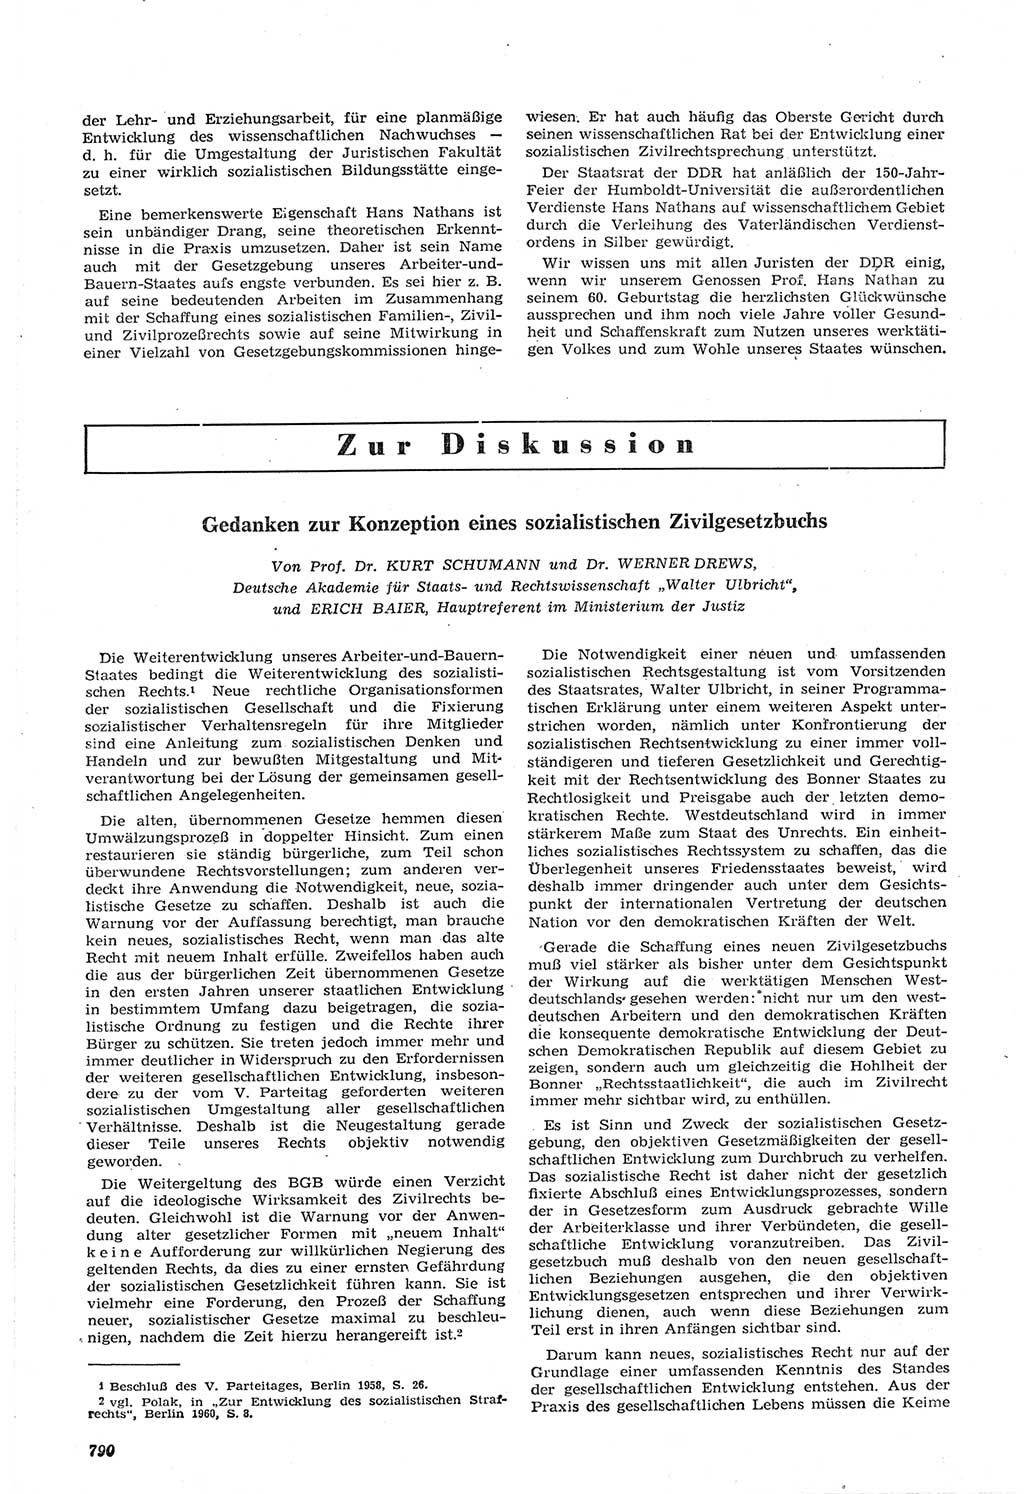 Neue Justiz (NJ), Zeitschrift für Recht und Rechtswissenschaft [Deutsche Demokratische Republik (DDR)], 14. Jahrgang 1960, Seite 790 (NJ DDR 1960, S. 790)